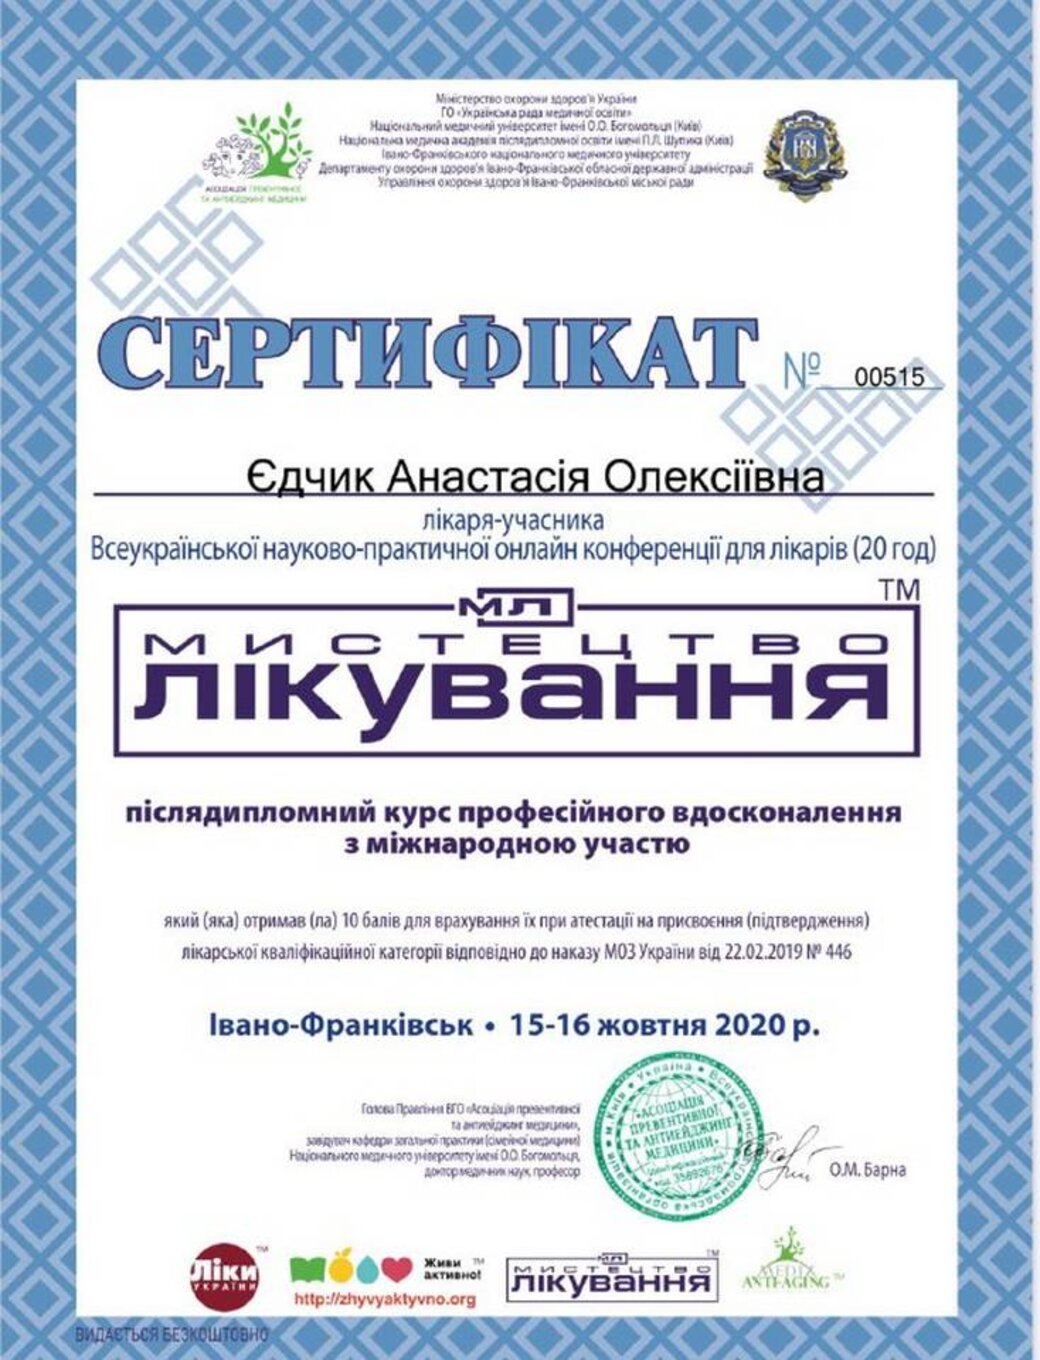 certificates/yedchik-anastasiya-oleksiyivna/erc-edchik-cert-48.jpg